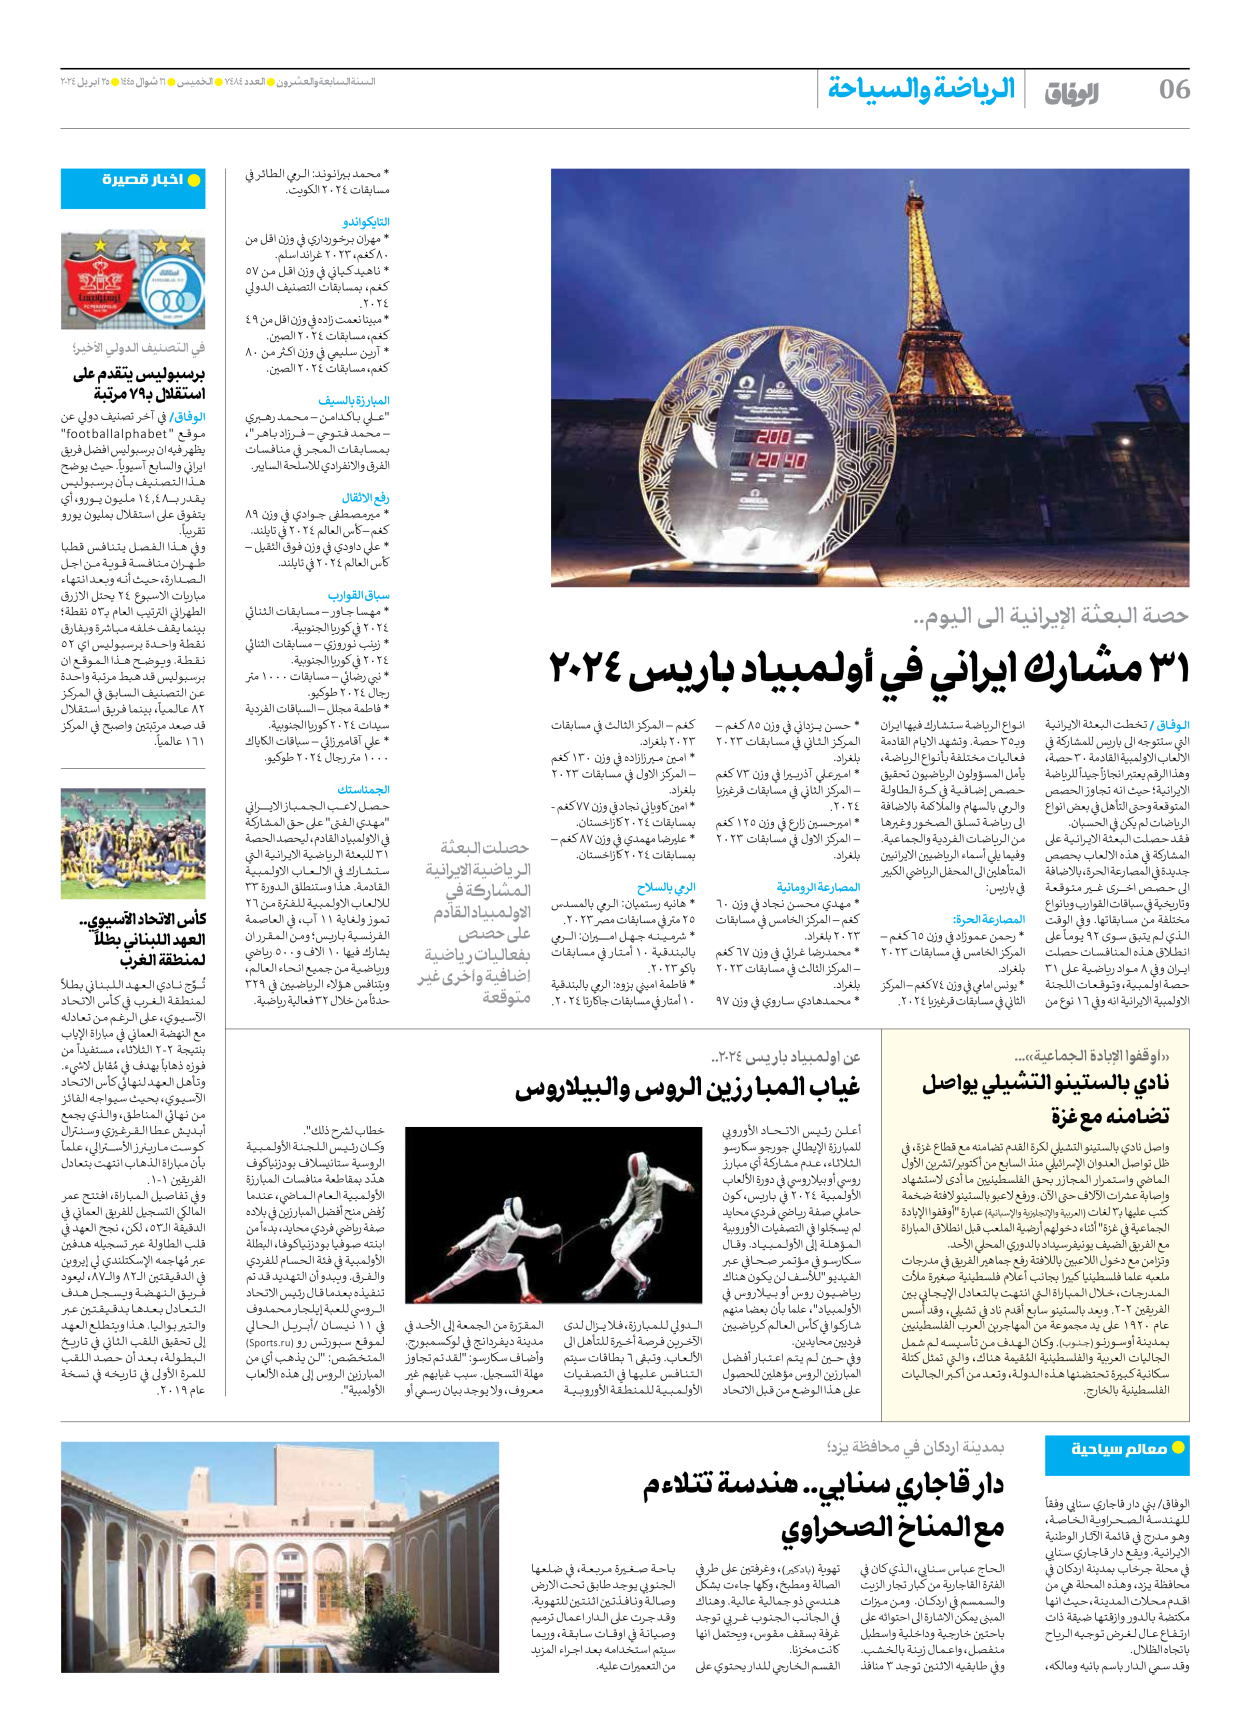 صحیفة ایران الدولیة الوفاق - العدد سبعة آلاف وأربعمائة وأربعة وثمانون - ٢٥ أبريل ٢٠٢٤ - الصفحة ٦